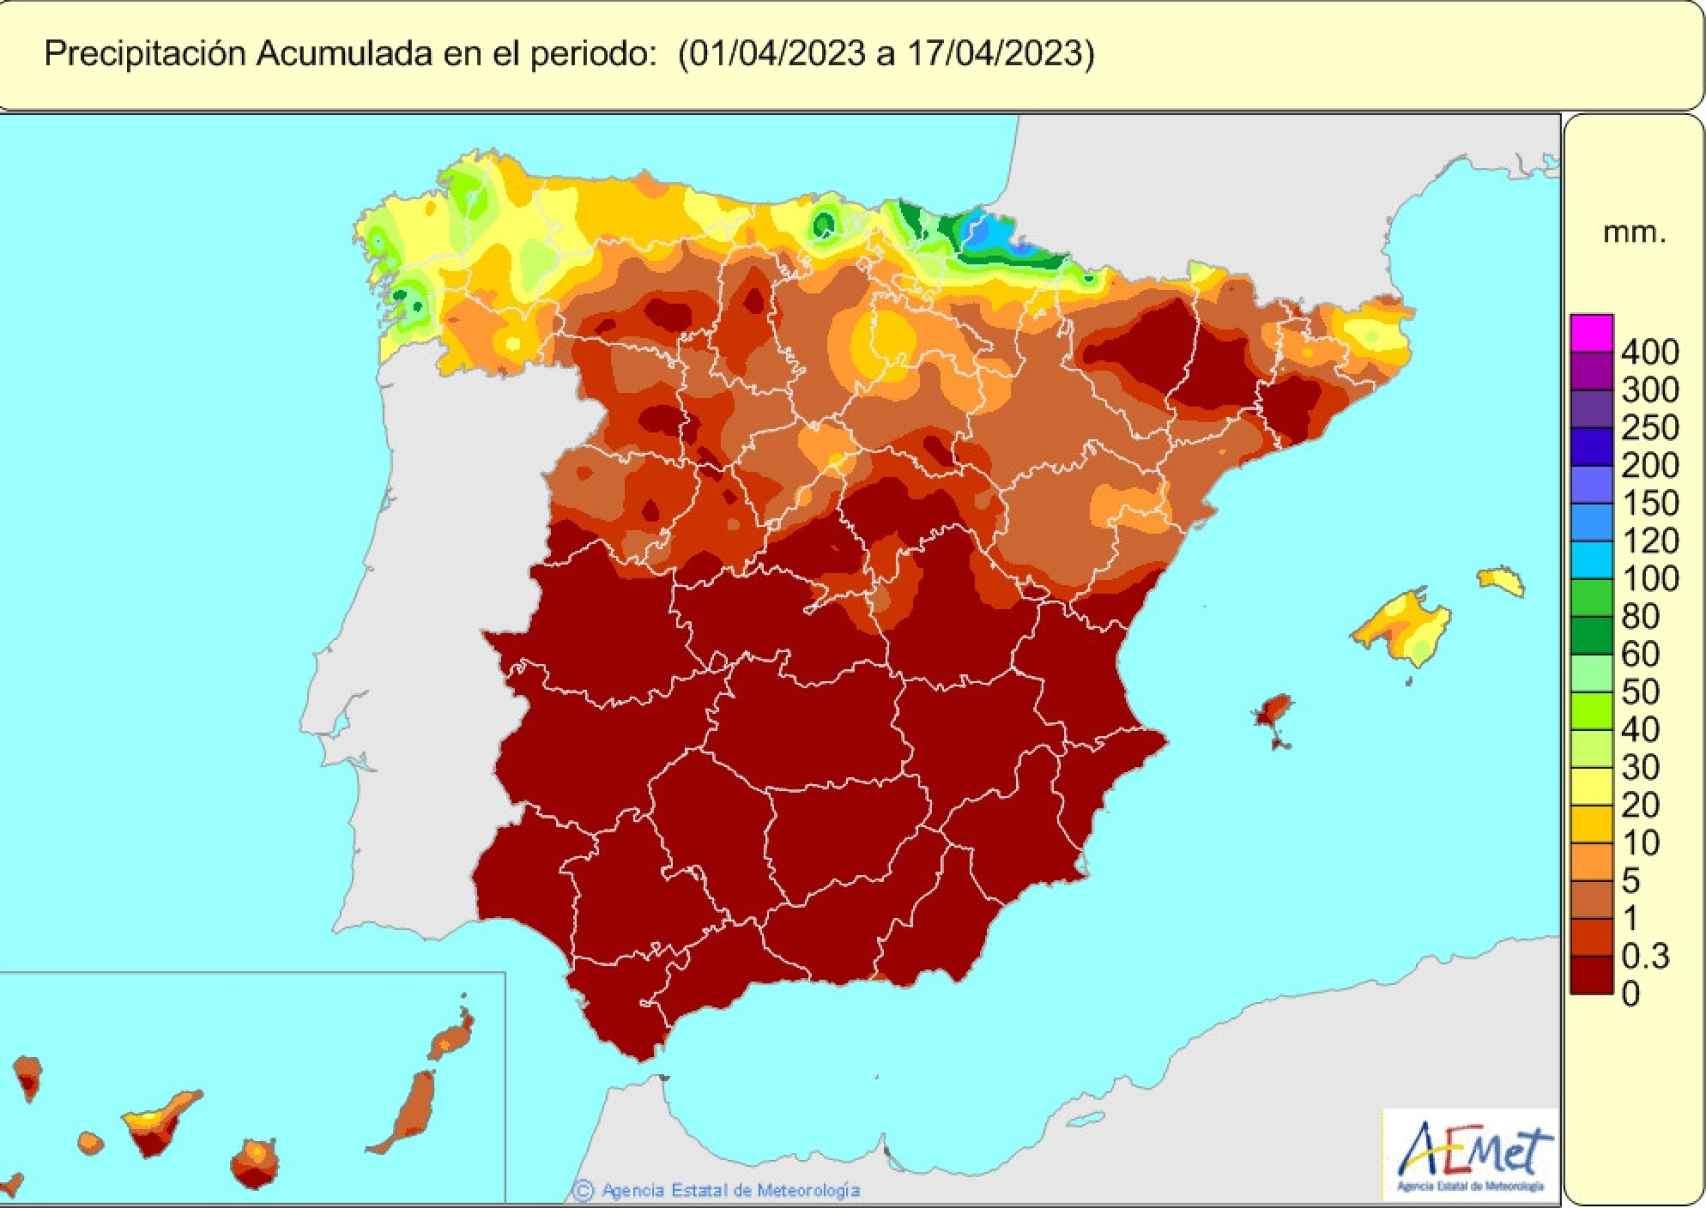 Mapa de precipitación acumulada en España entre el 1 y 17 de abril.